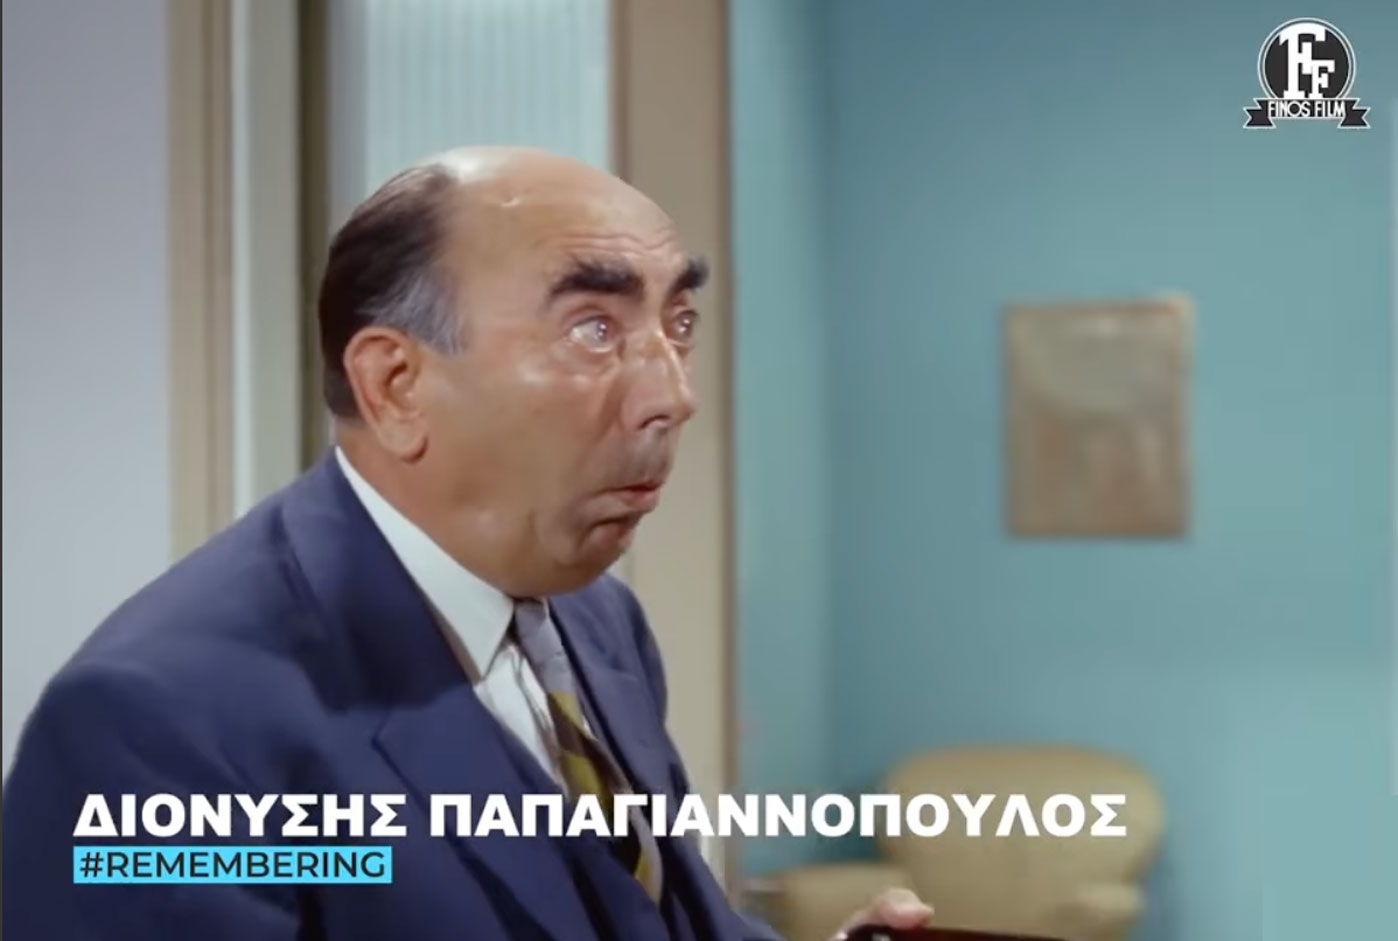 Σαν σήμερα πέθανε ο Διονύσης Παπαγιαννόπουλος και η Φίνος Φιλμς τον θυμάται με απολαυστικό βίντεο